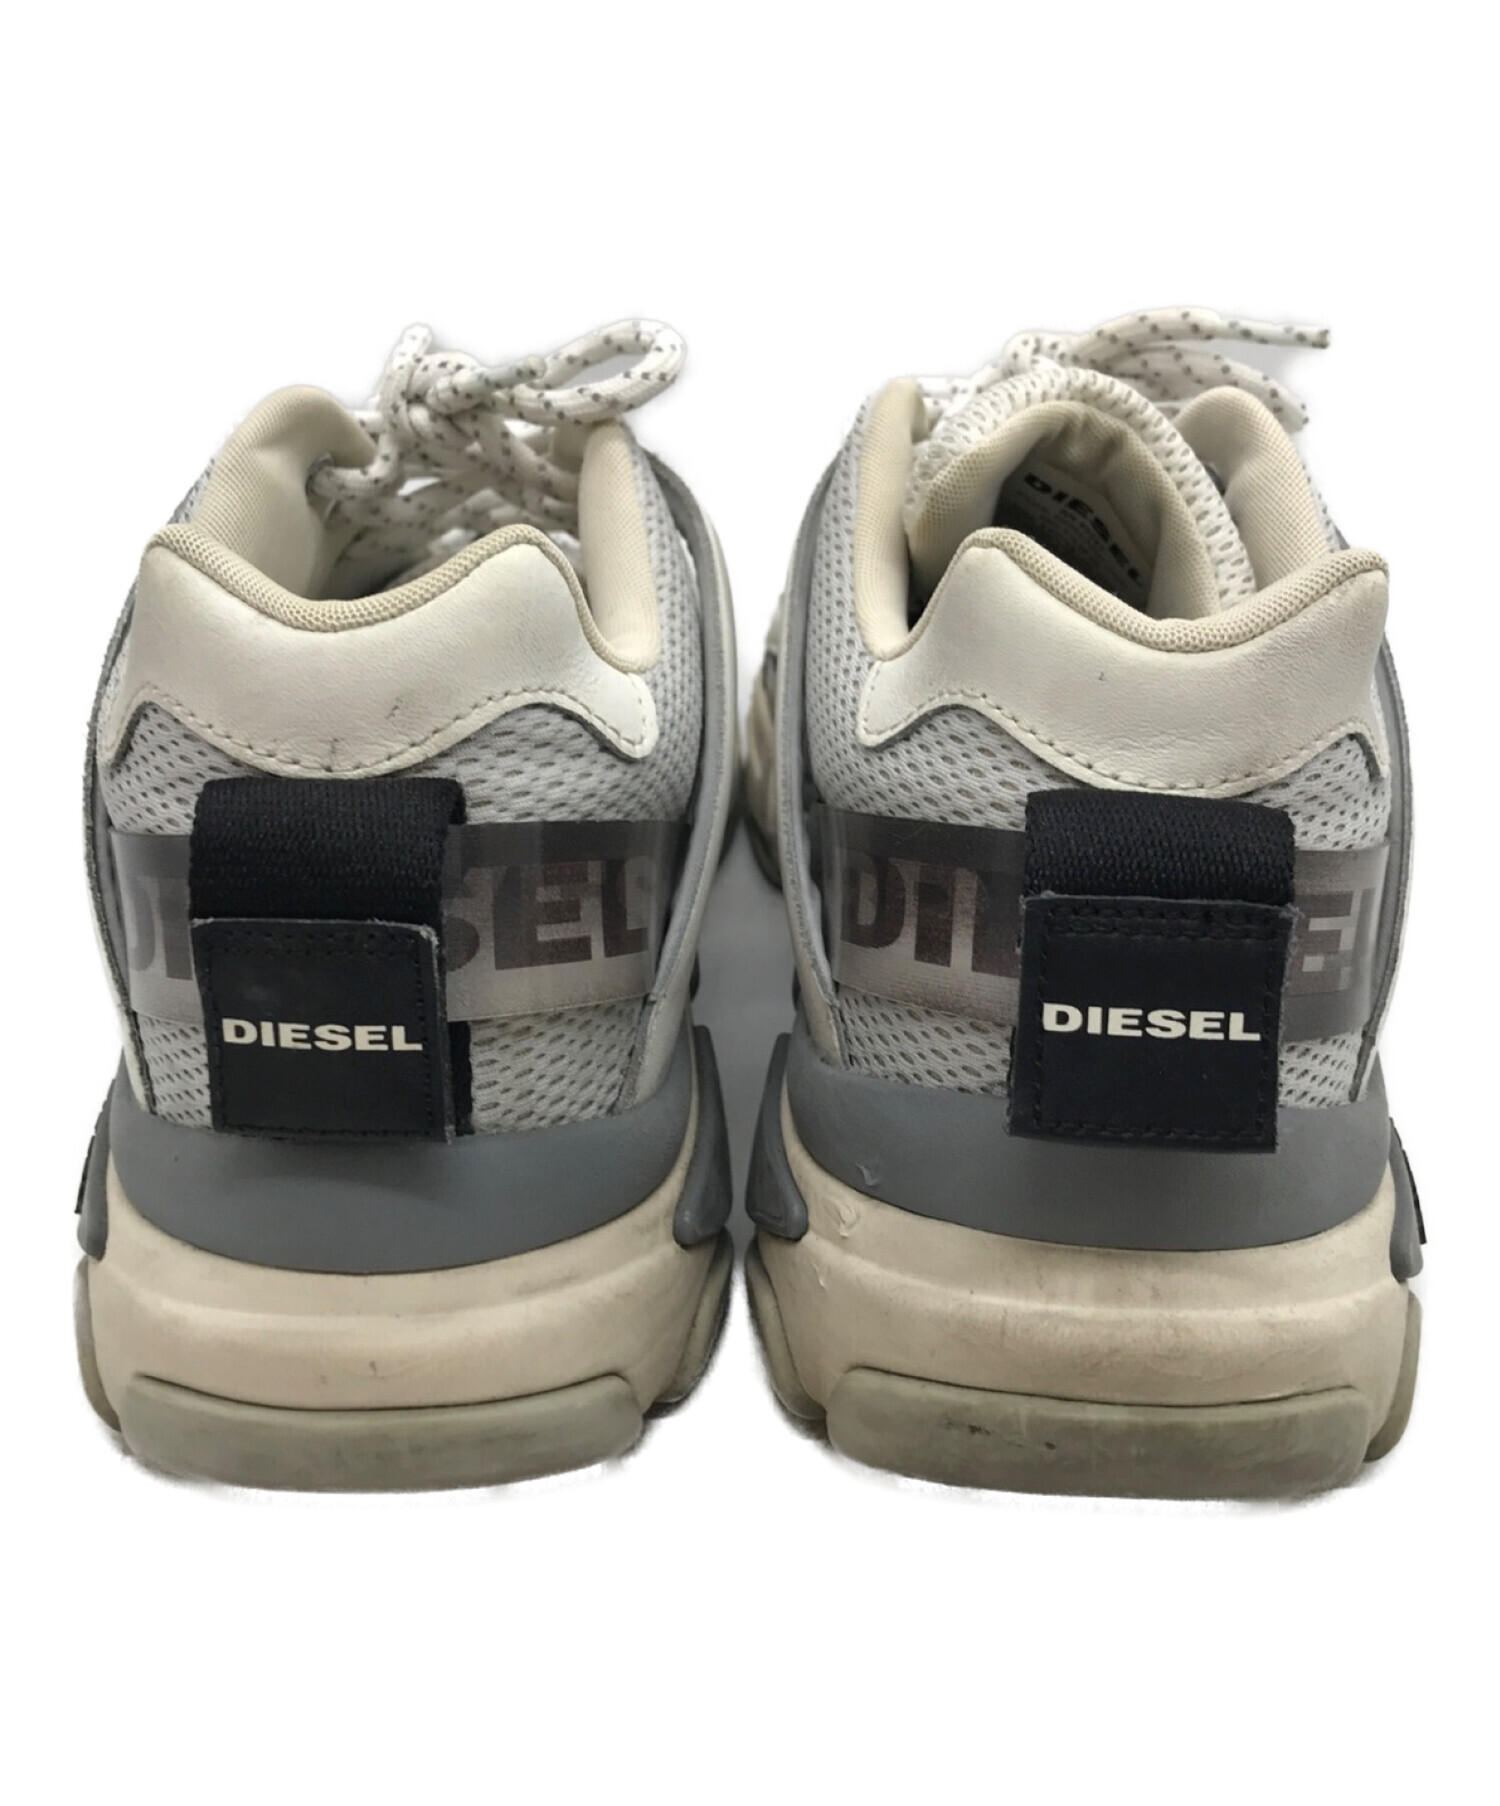 SEAL限定商品 ディーゼル DIESEL 靴 スニーカー 4432 28.5センチ ...